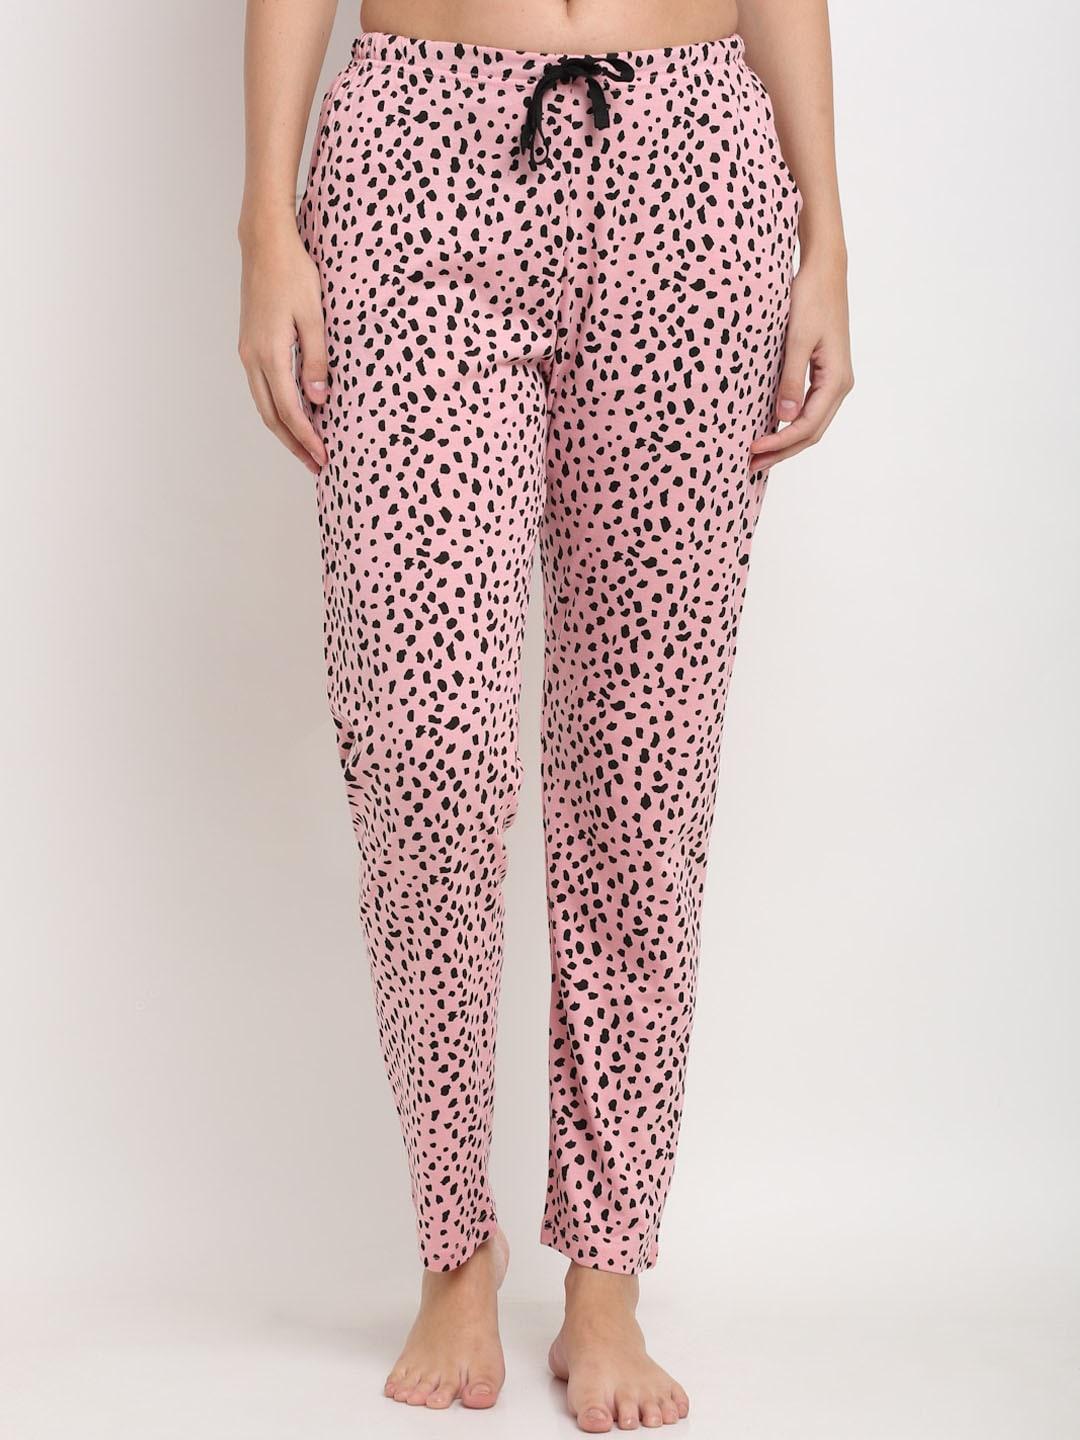 kanvin women pink printed lounge pants